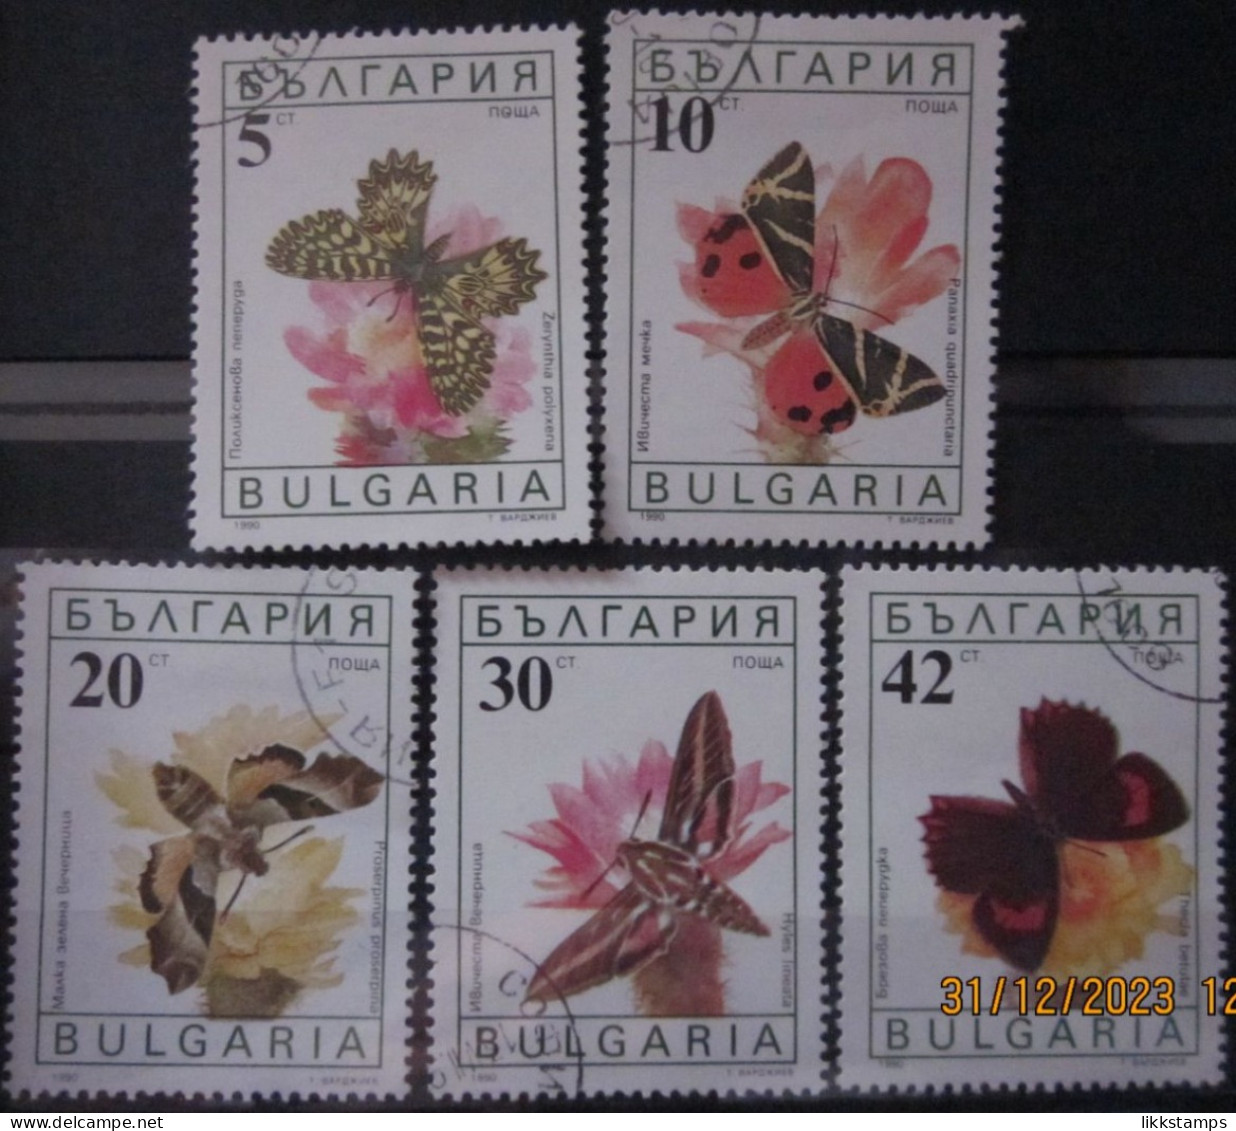 BULGARIA 1990 ~ S.G. 3699 - 3703, ~ BUTTERFLIES AND MOTHS. ~  VFU #02913 - Oblitérés